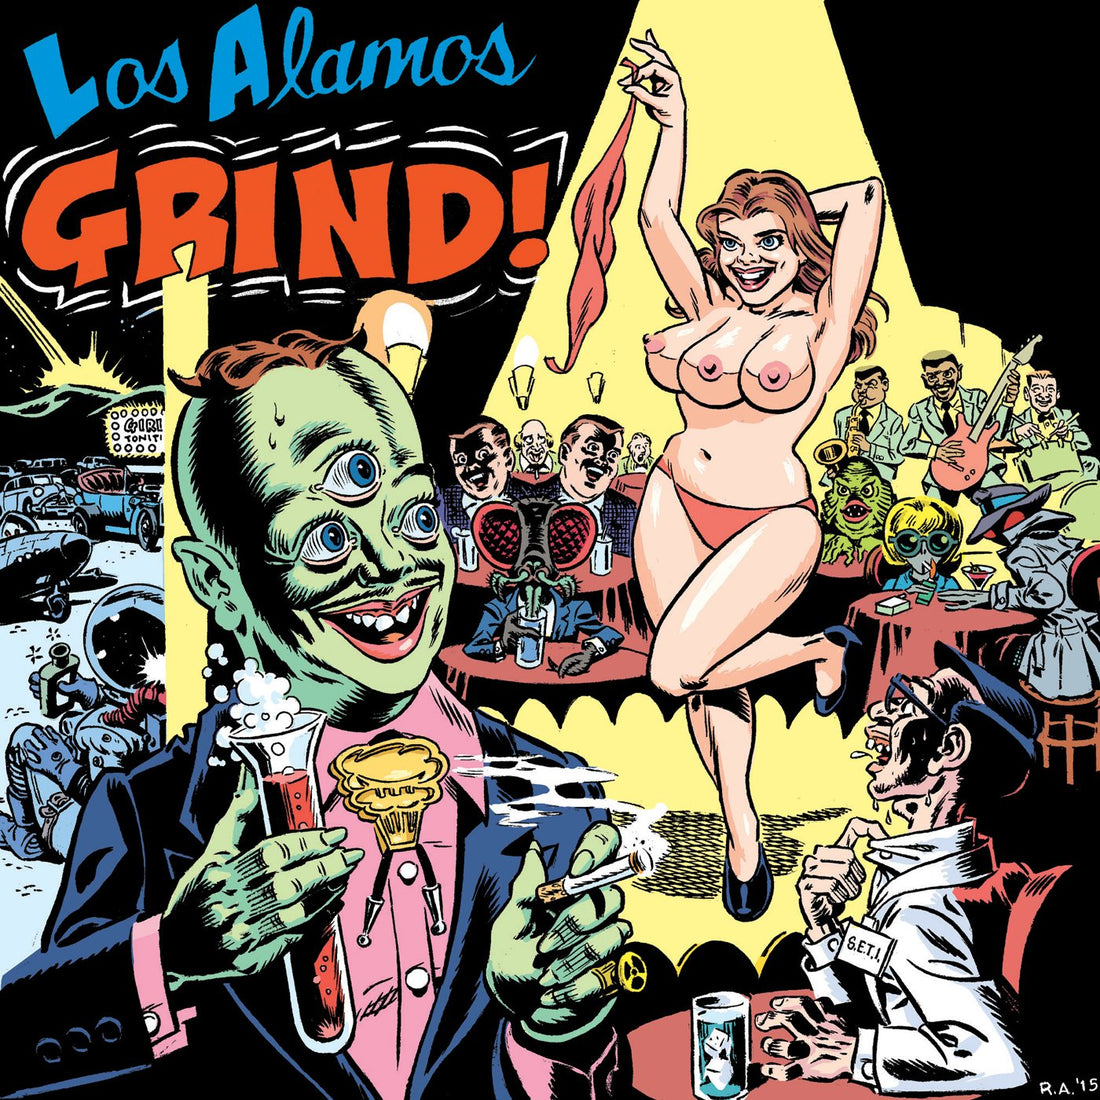 Los Alamos- Grind!